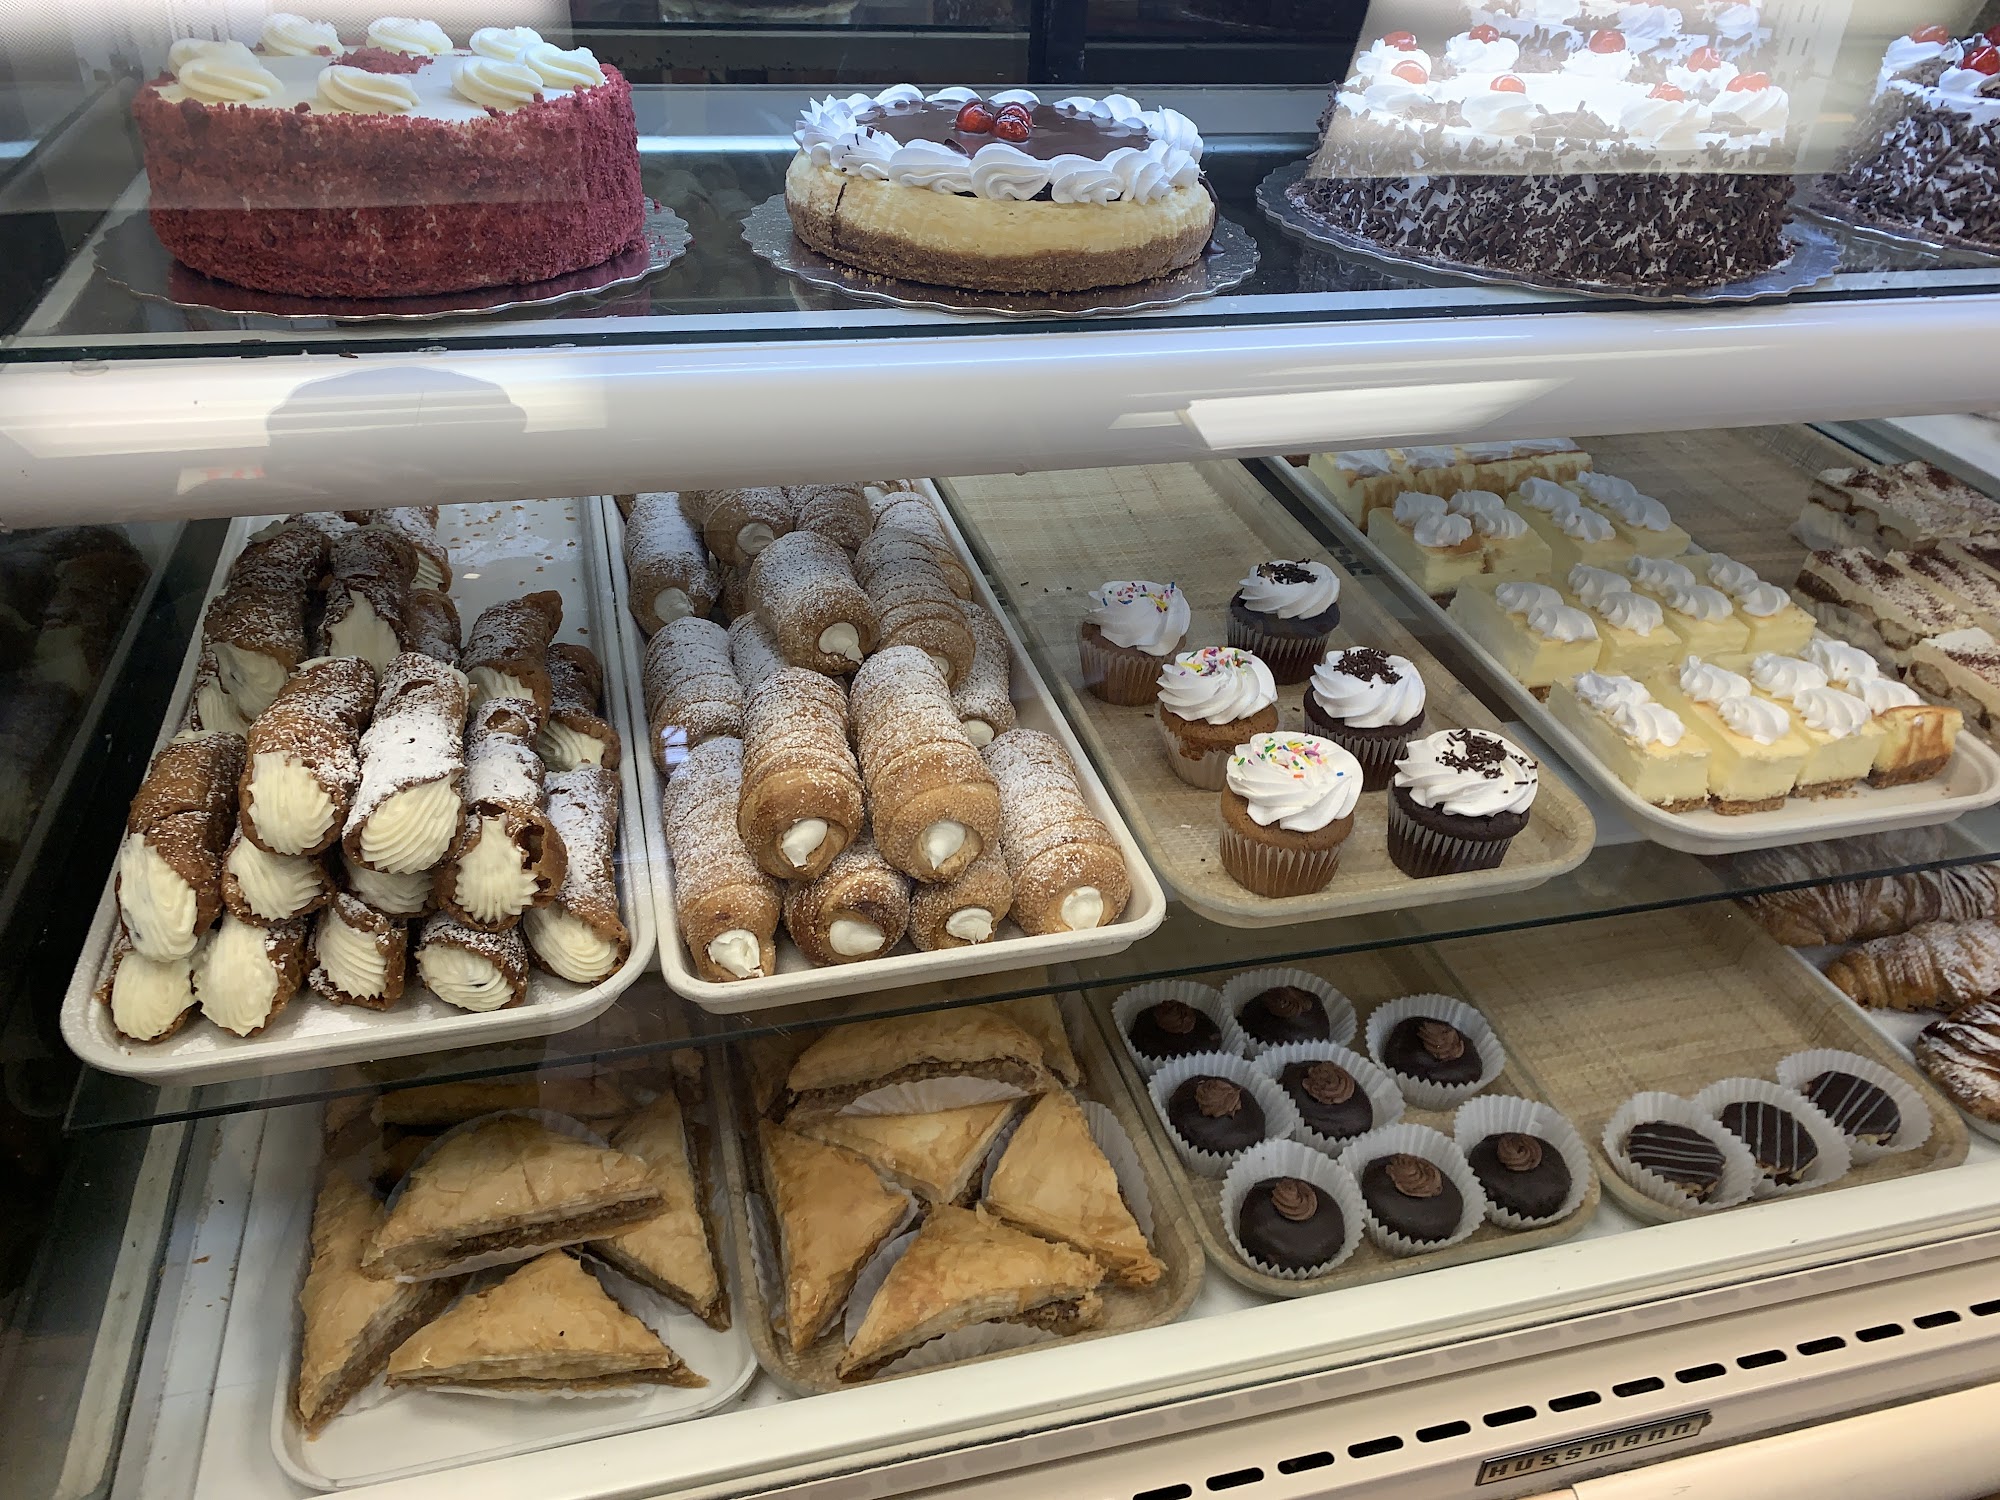 Messina Bakery